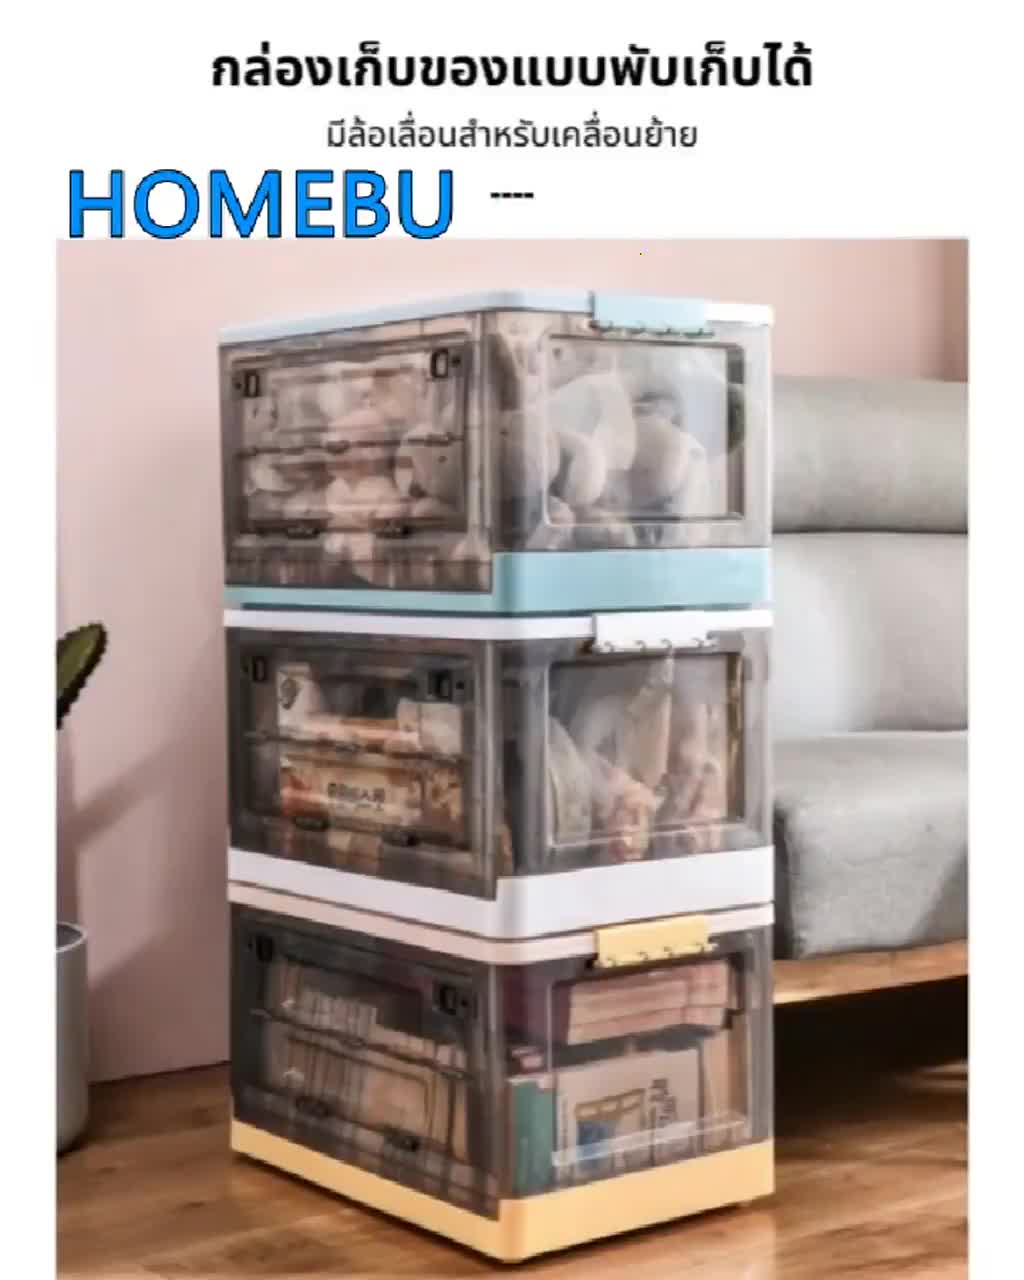 homebu-กล่อง-กล่องเก็บของพับเก็บได้-กล่องเก็บของ-กล่องใส่ของ-กล่องเก็บของ-50l-มีล้อ-กล่องเก็บของอเนกประสงค์-storage-box